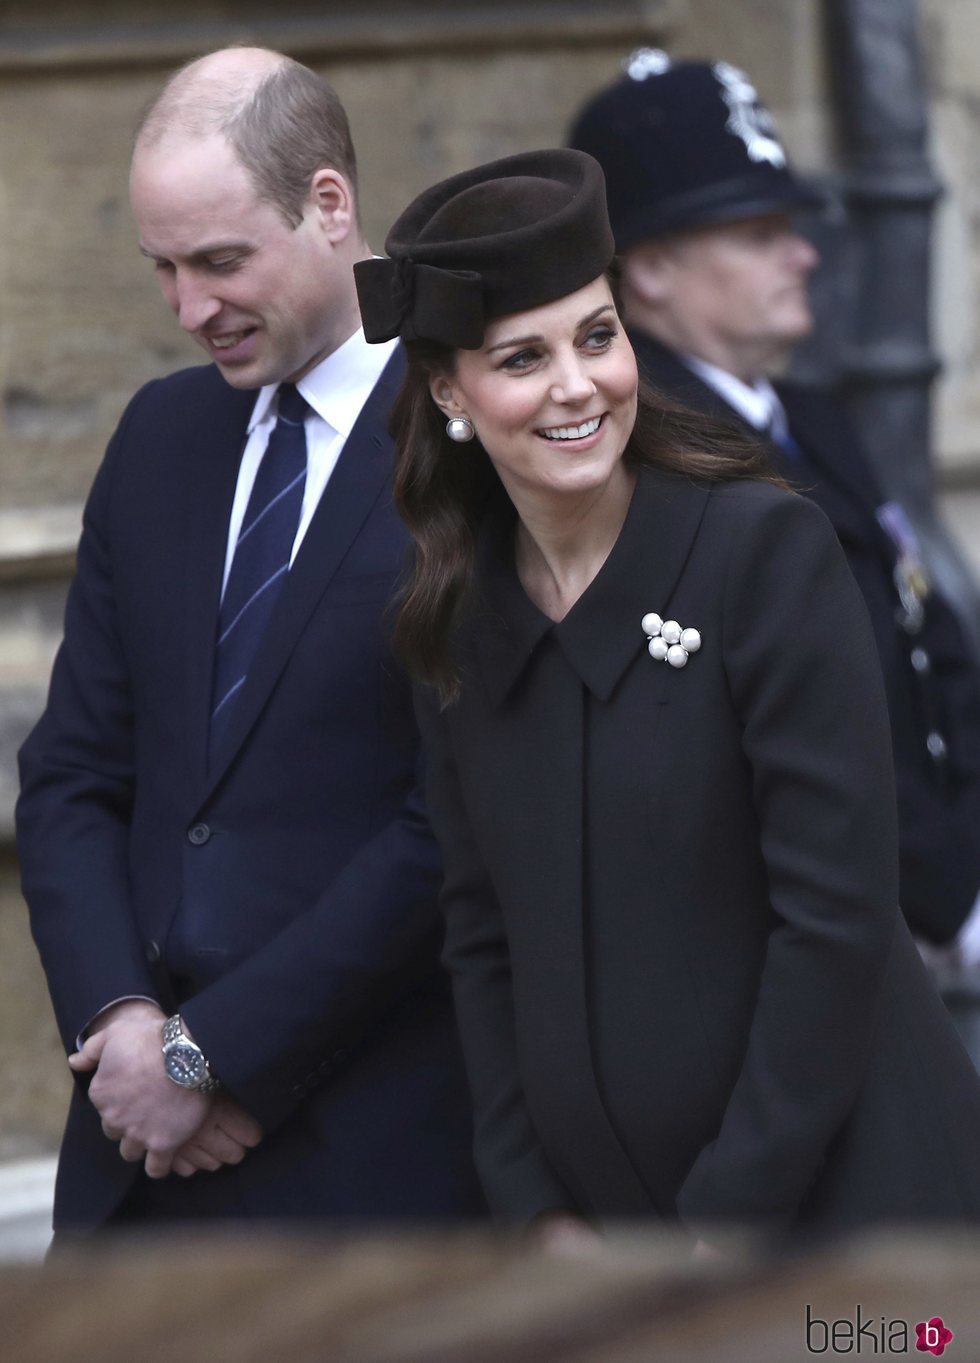 El Príncipe Guillermo y Kate Middleton en la Misa de Pascua 2018